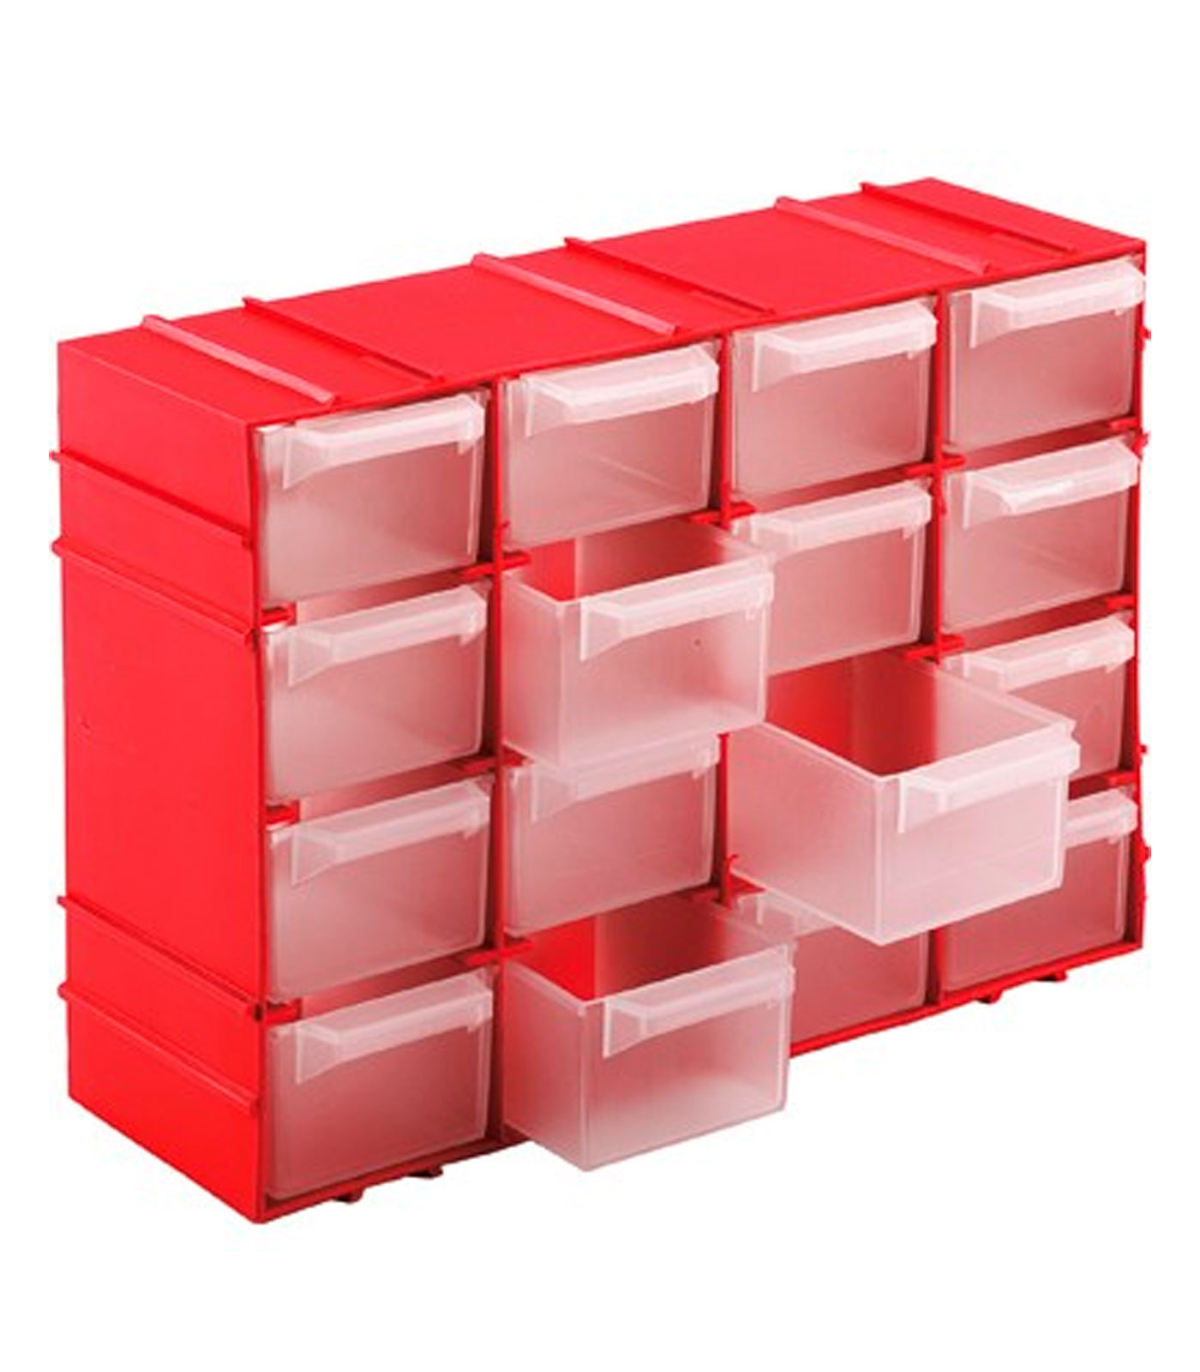 Tradineur - Clasificador apilable de plástico, 16 cajones, módulo, estante  organizador para piezas pequeñas, tornillos, botones